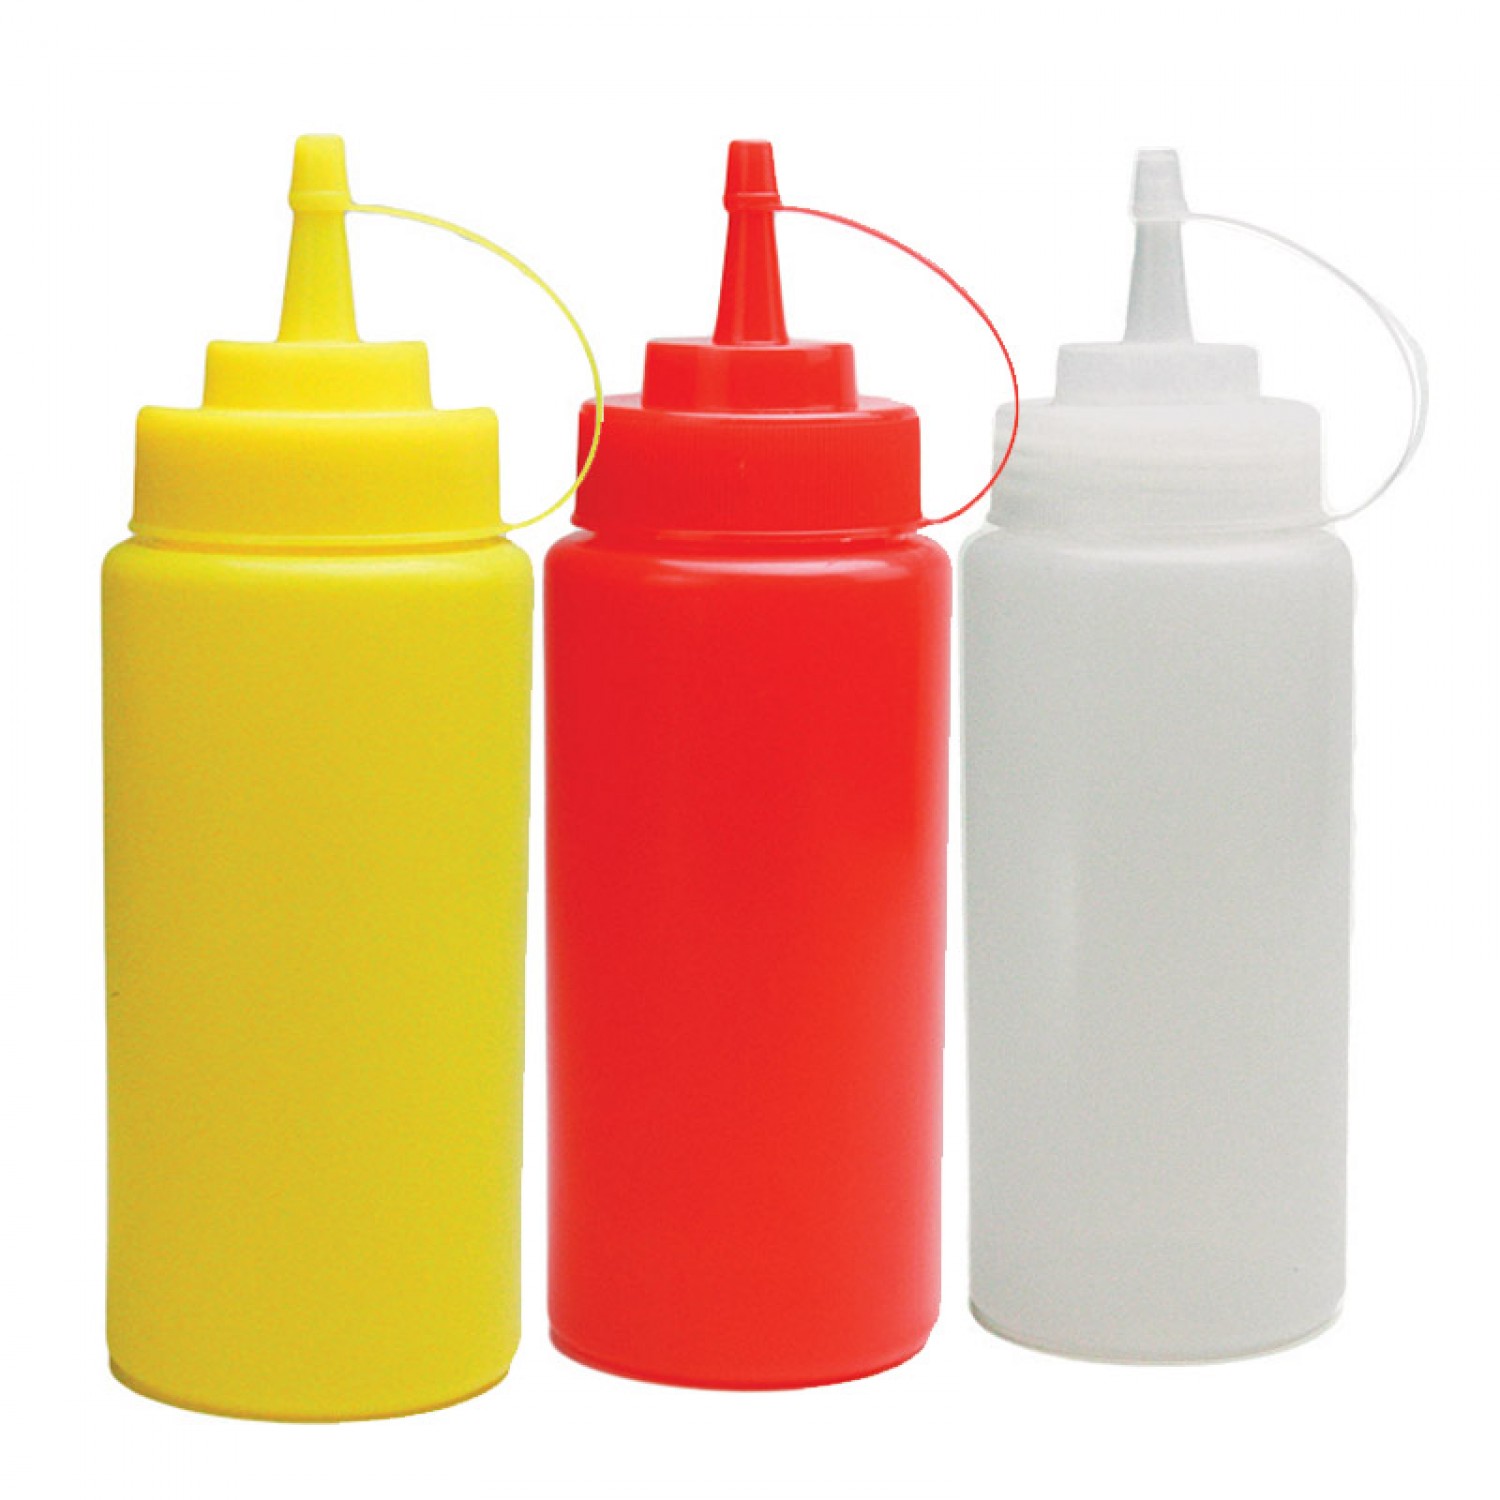 Μπουκάλι πλαστικό σερβιρίσματος Διάφανο χρώμα 8oz (237ml)